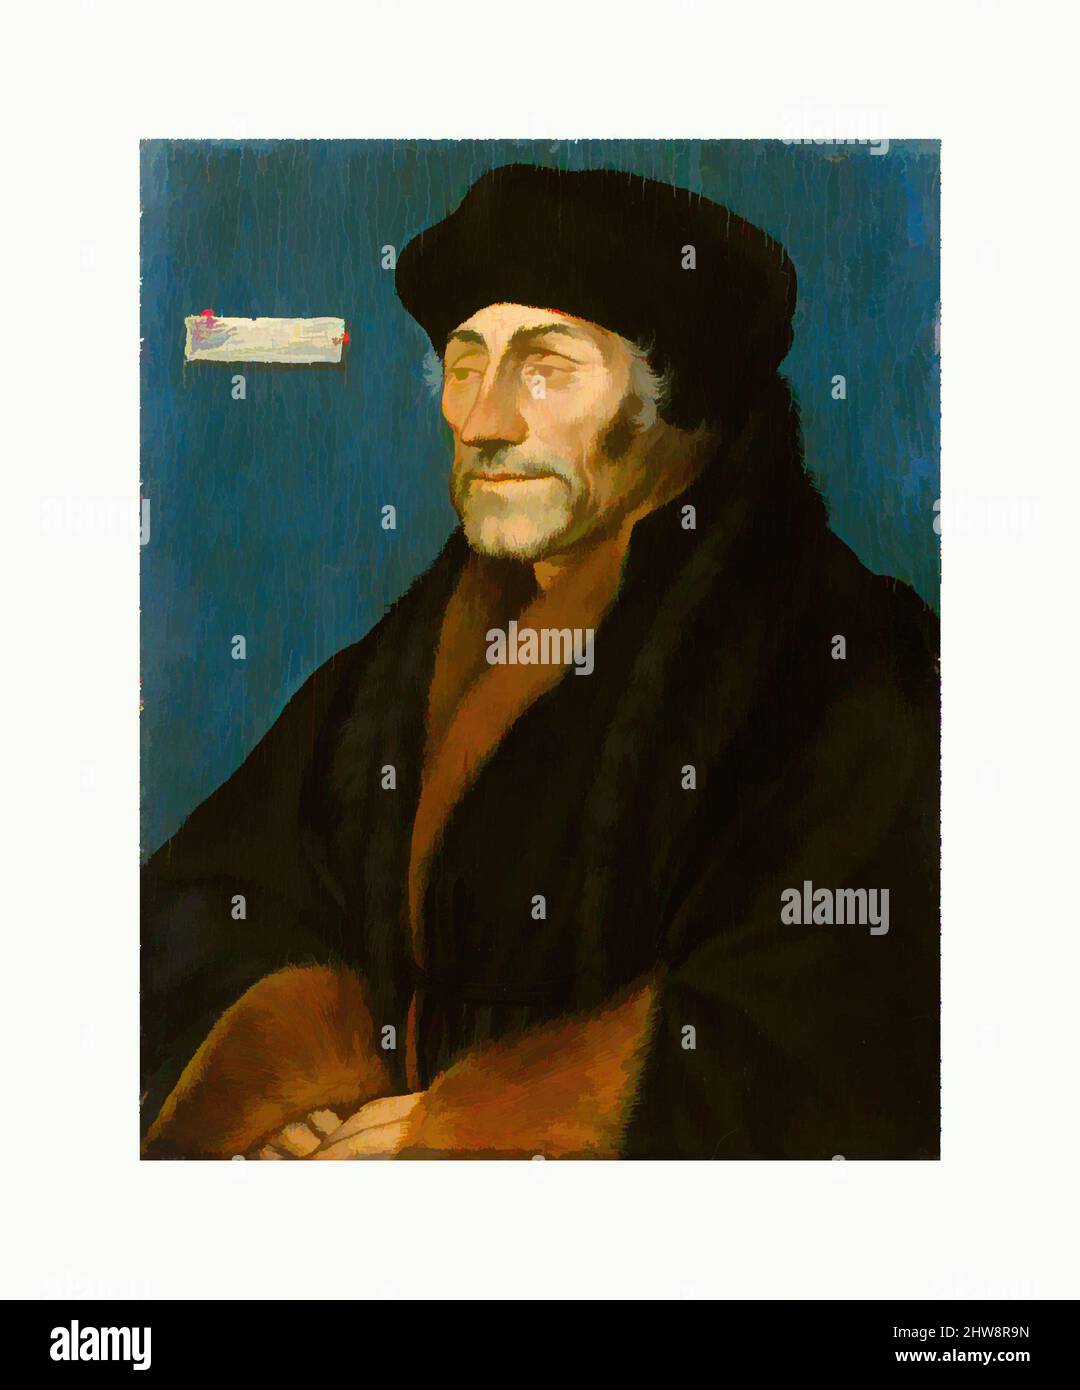 Kunst inspiriert von Erasmus von Rotterdam, ca. 1532, Öl auf Lindenplatte, 7 1/4 x 5 9/16 Zoll (18,4 x 14,2 cm); lackierte Oberfläche 6 15/16 x 5 1/2 Zoll (17,6 x 14 cm), Gemälde, Hans Holbein der Jüngere (Deutsch, Augsburg 1497/98–1543 London) (und Workshop(?)), Hans Holbein der Jüngere war eins, Klassische Werke, die von Artotop mit einem Schuss Moderne modernisiert wurden. Formen, Farbe und Wert, auffällige visuelle Wirkung auf Kunst. Emotionen durch Freiheit von Kunstwerken auf zeitgemäße Weise. Eine zeitlose Botschaft, die eine wild kreative neue Richtung verfolgt. Künstler, die sich dem digitalen Medium zuwenden und die Artotop NFT erschaffen Stockfoto